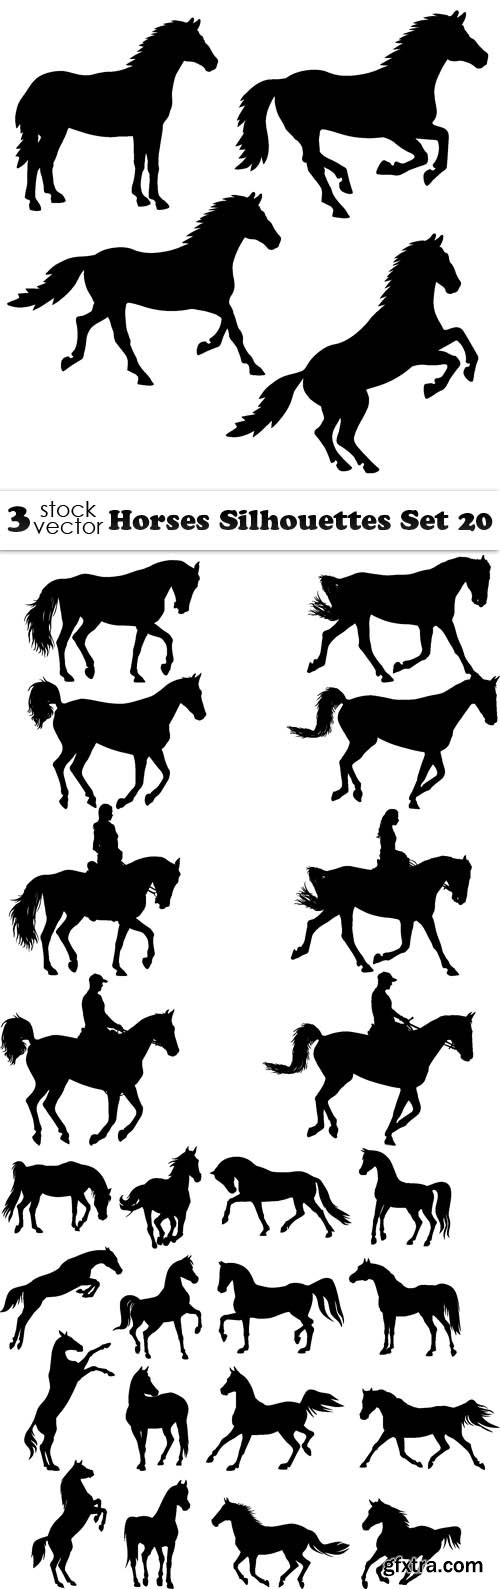 Vectors - Horses Silhouettes Set 20